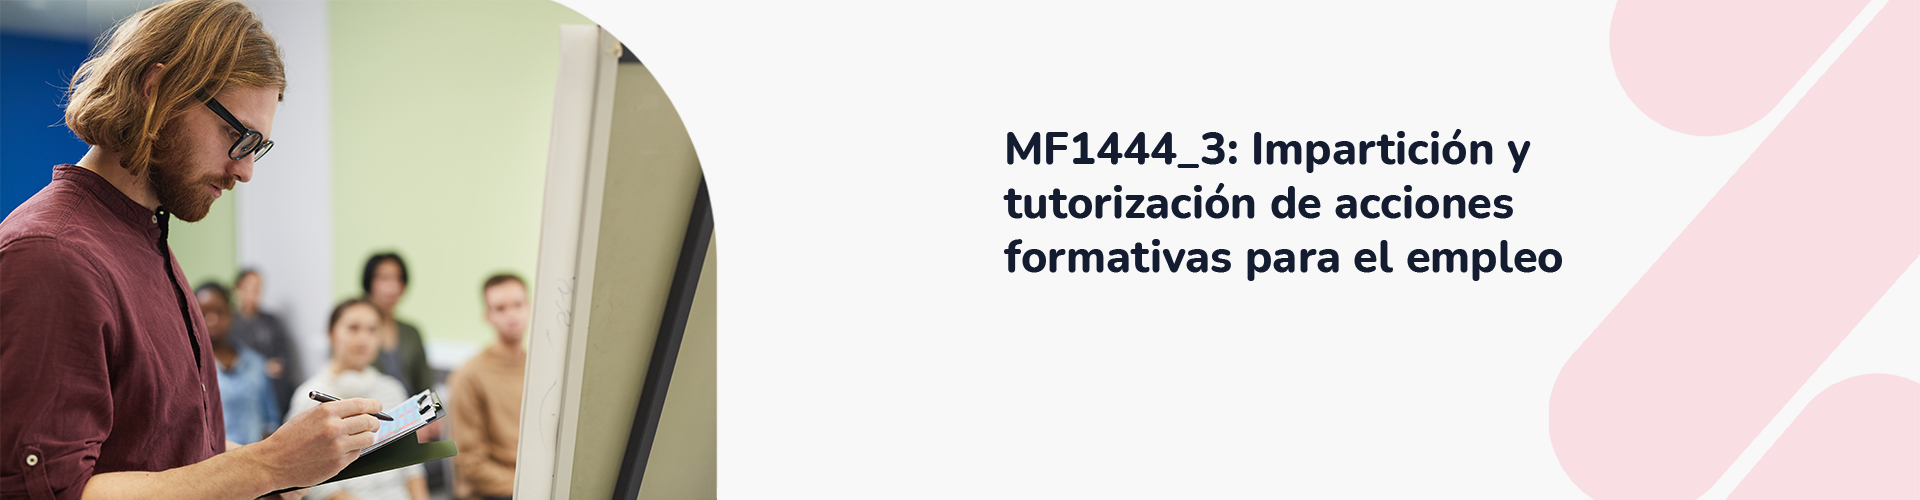 MF1444_3_ Impartición y tutorización de acciones formativas para el empleo